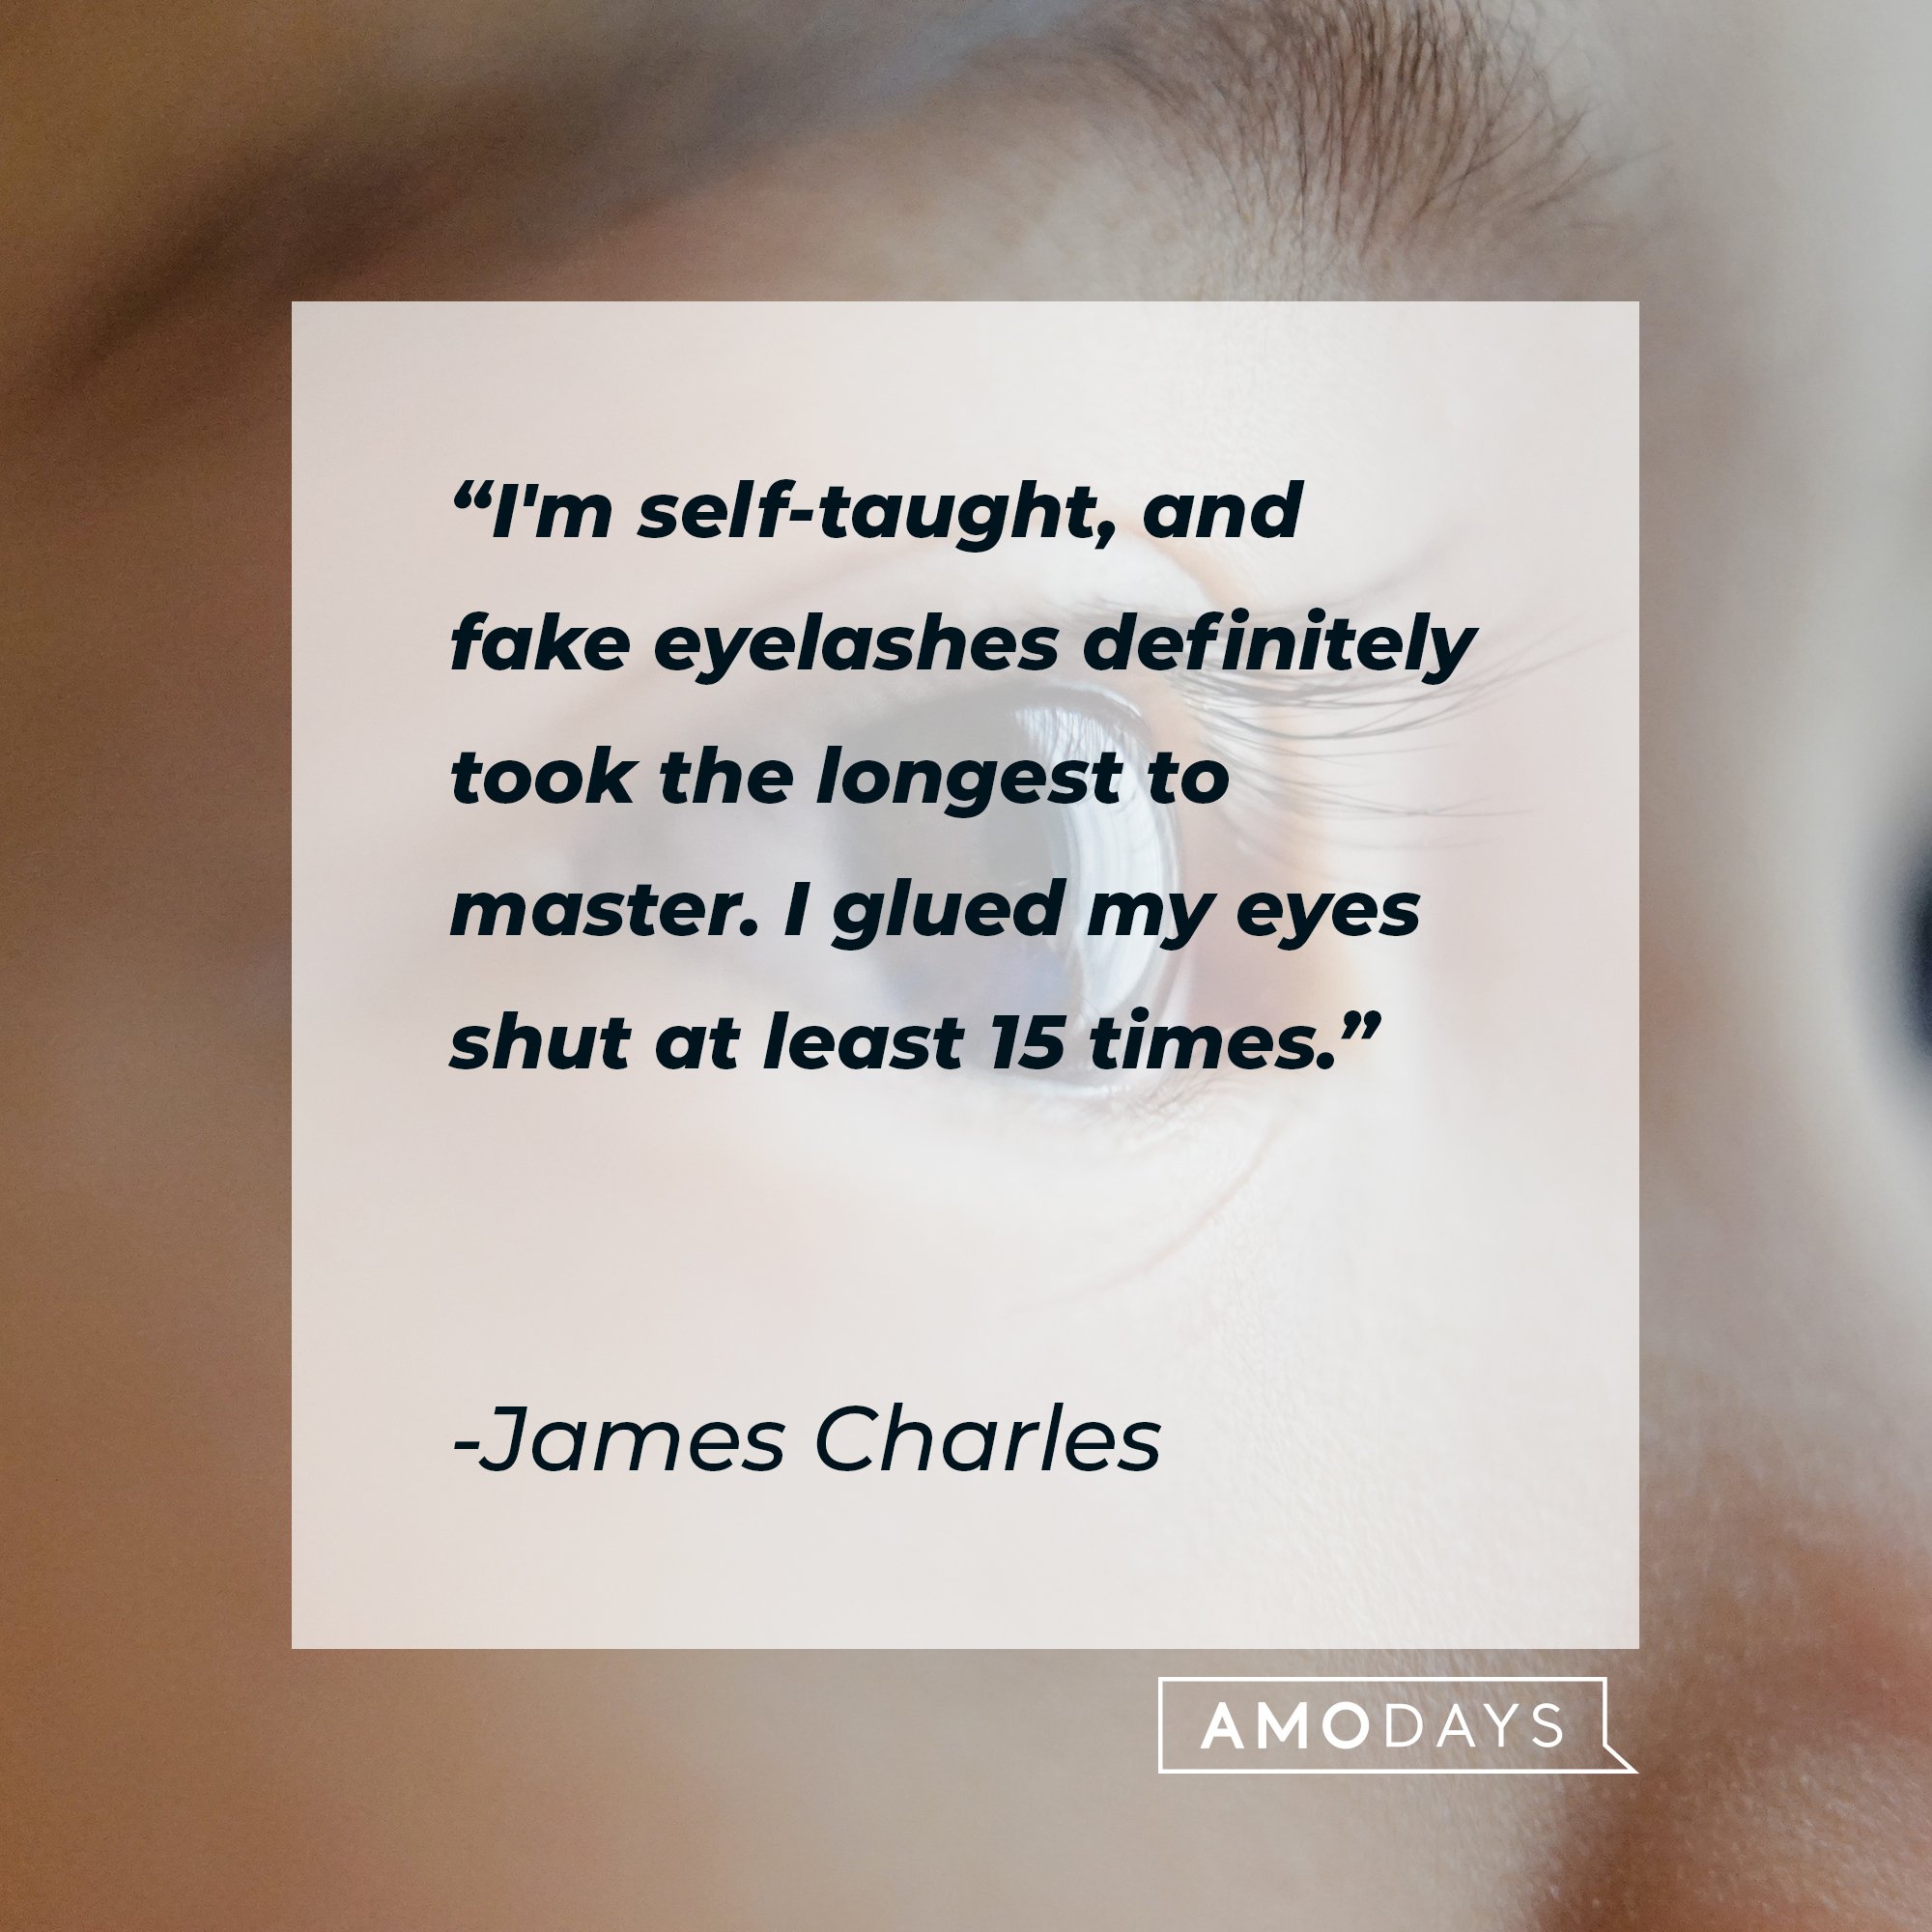 James Charles’ quote: "I'm self-taught, and fake eyelashes definitely took the longest to master. I glued my eyes shut at least 15 times."  | Image: AmoDays